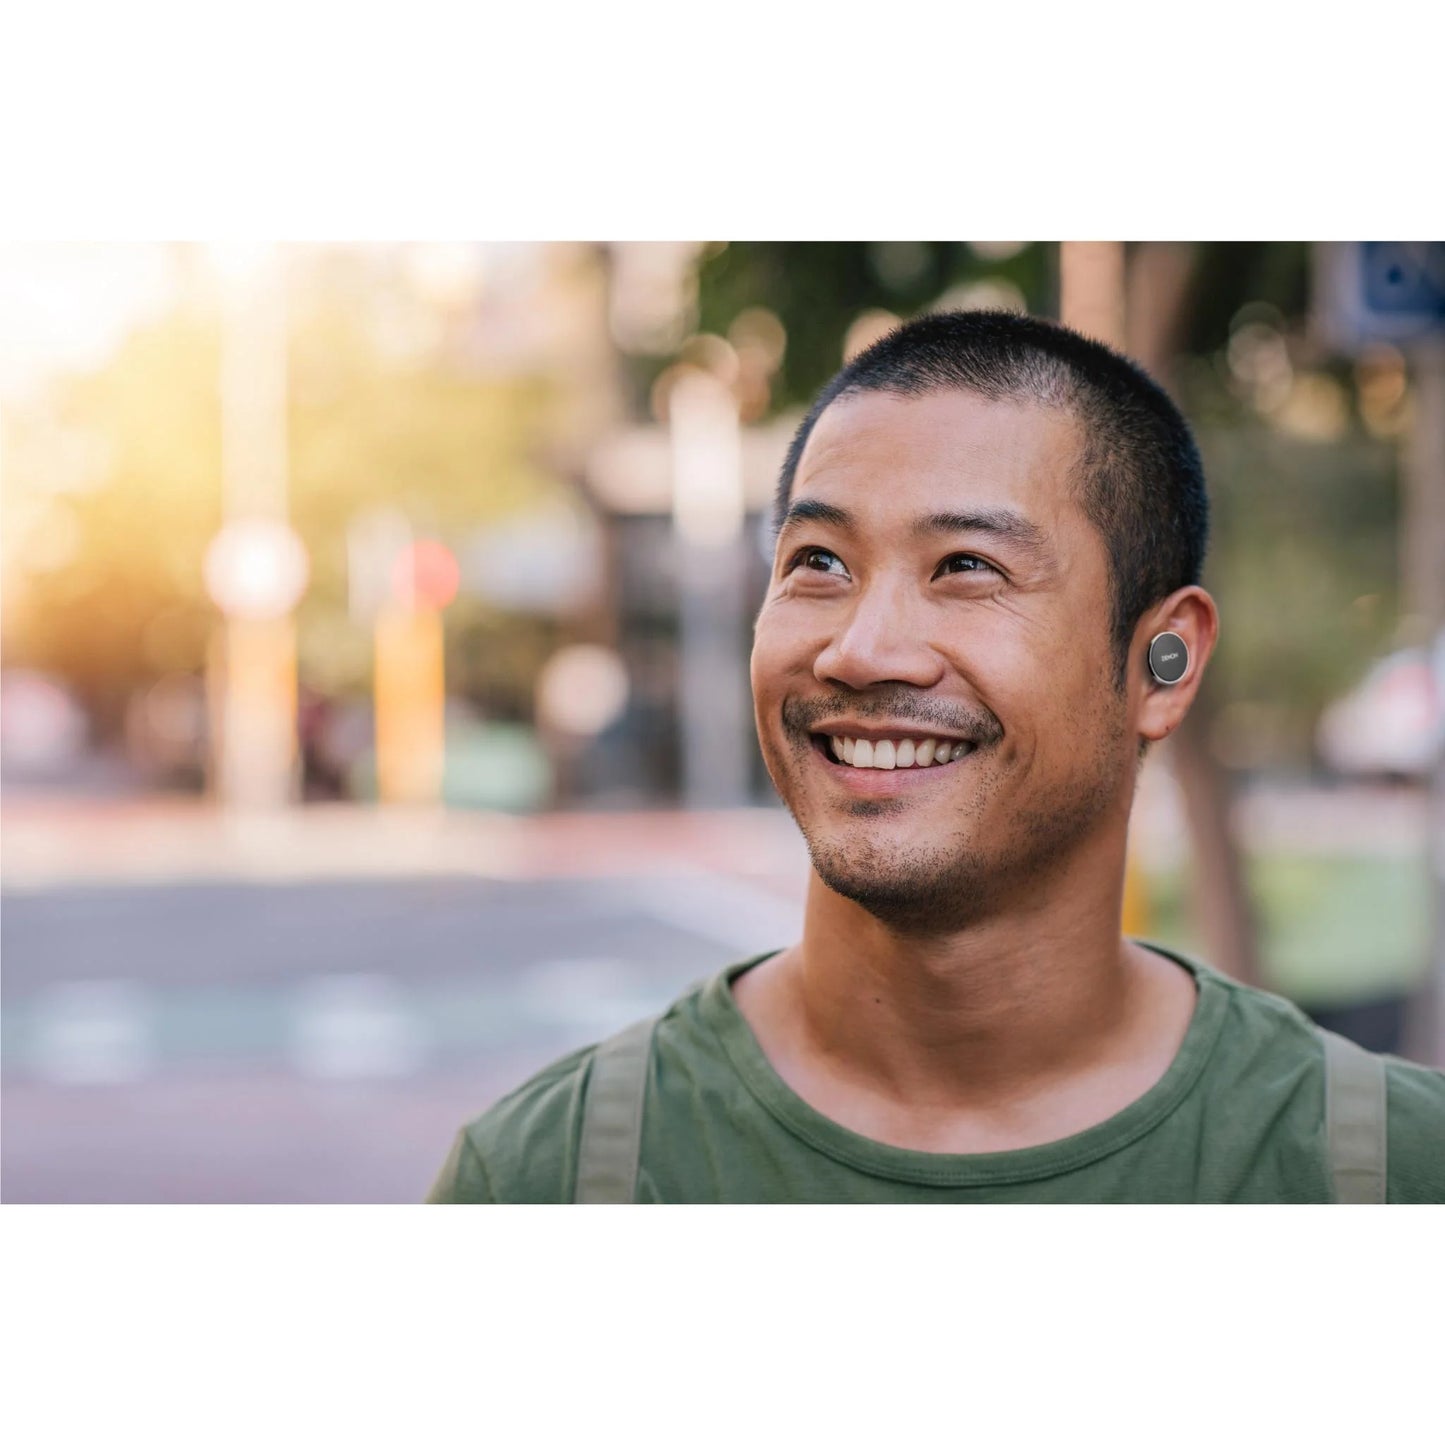 Denon PerL Pro True Wireless ANC In-Ear Headphones